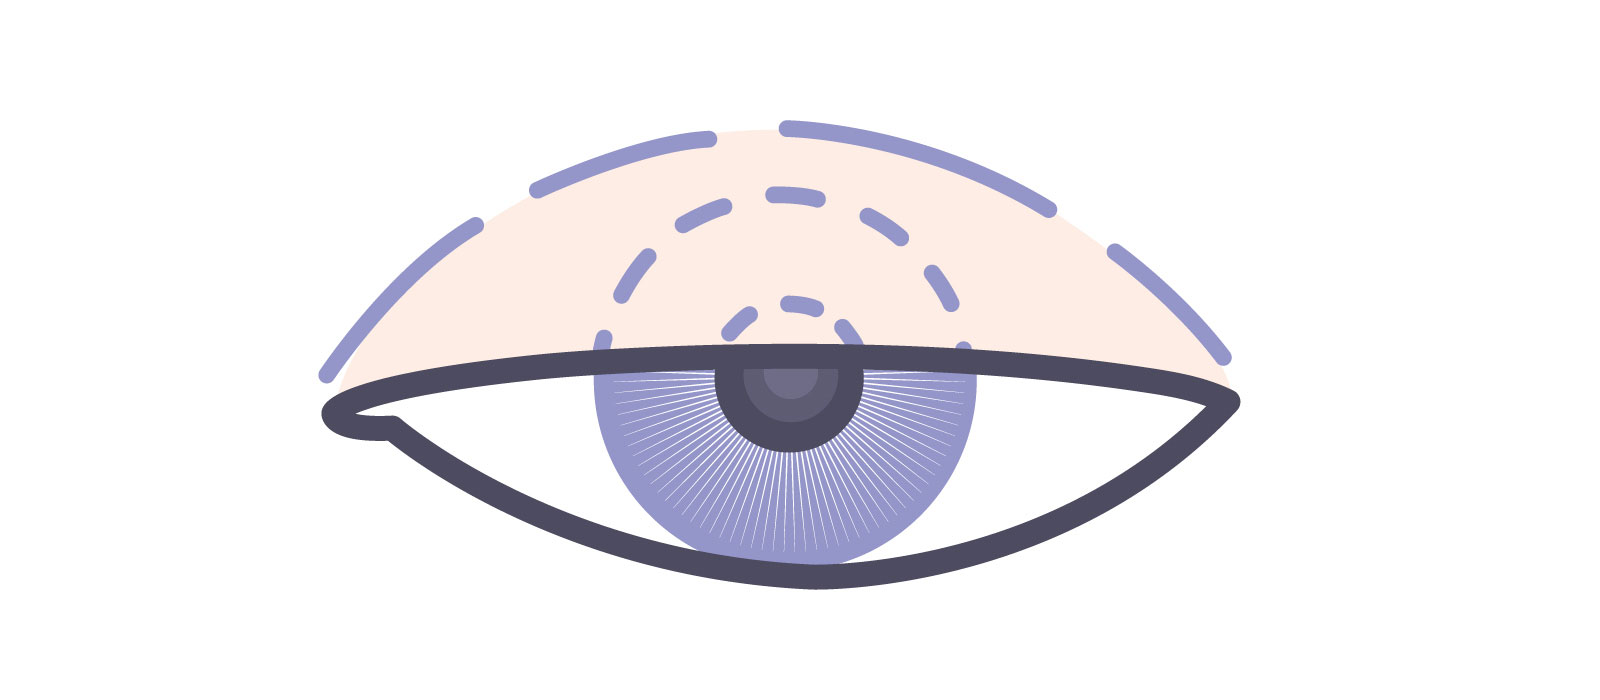 医療機関で眼瞼下垂の程度を診断する際に測定する数値 MRD-1（marginal reflex distance-1） イラスト